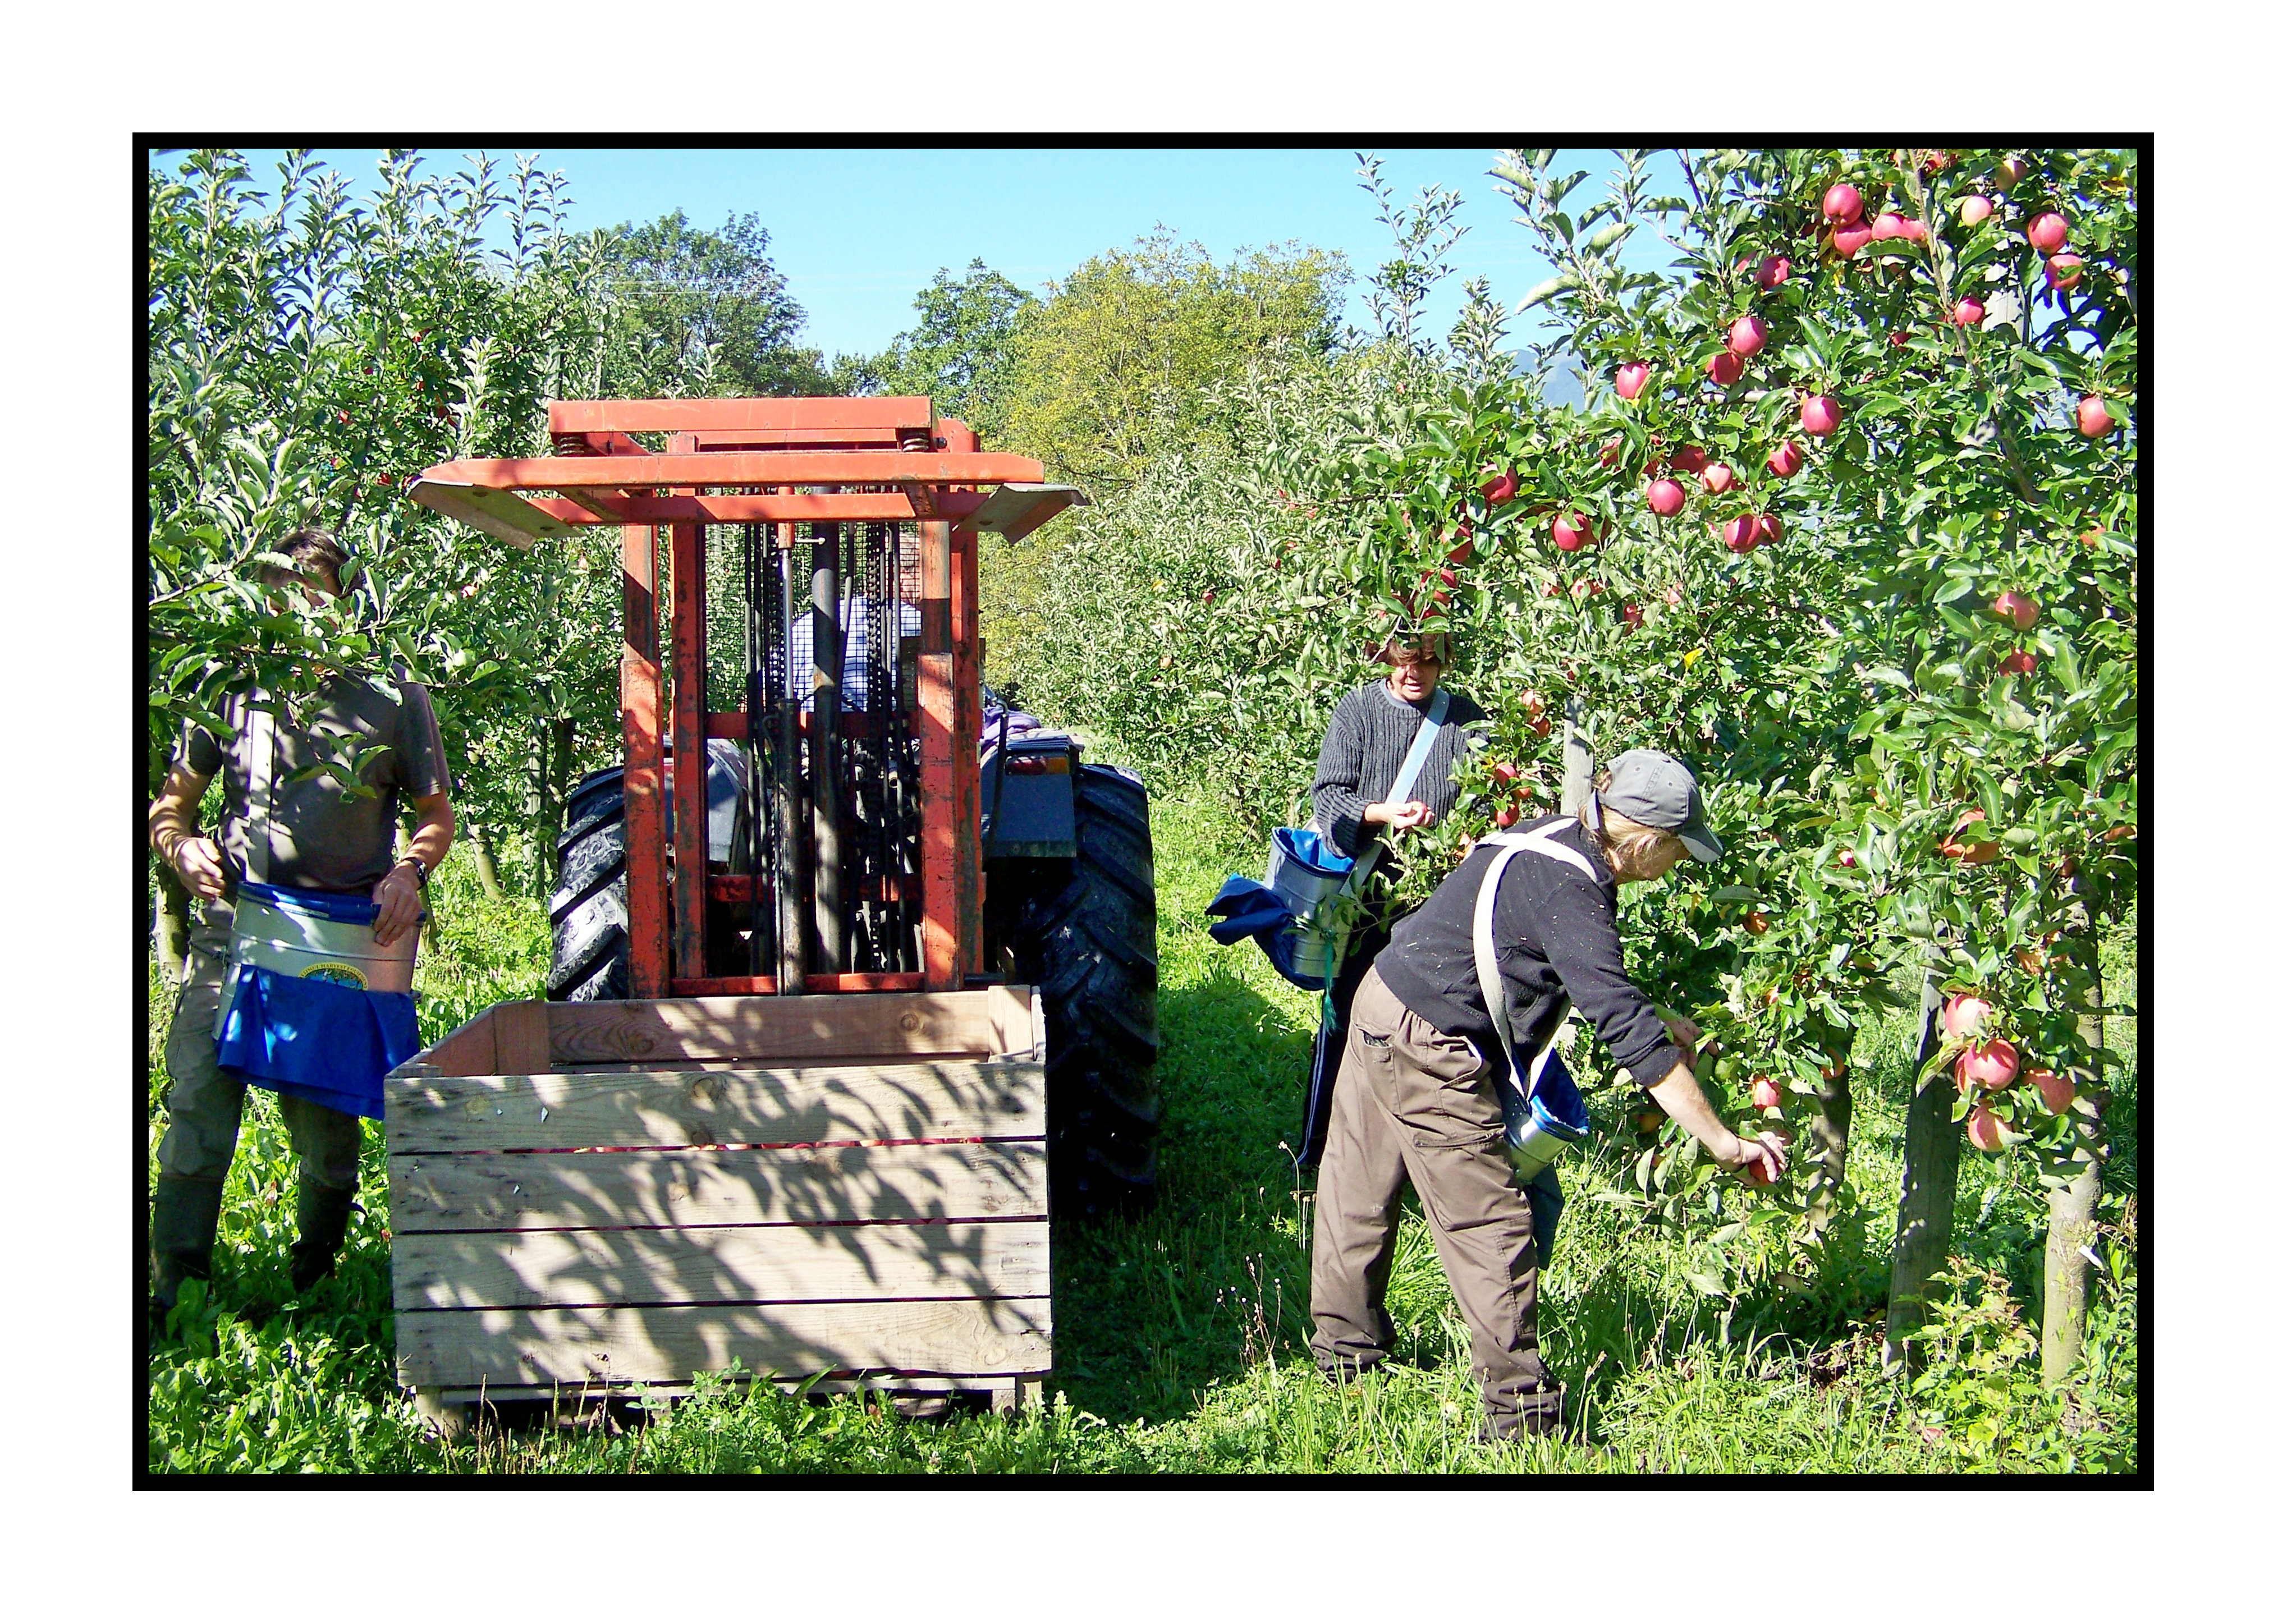 cueilletten pommes -Pommes bio- locales- arboriculteur- ferme-magasin de producteurs - Gilly sur Isère / Albertville- savoie - terroir